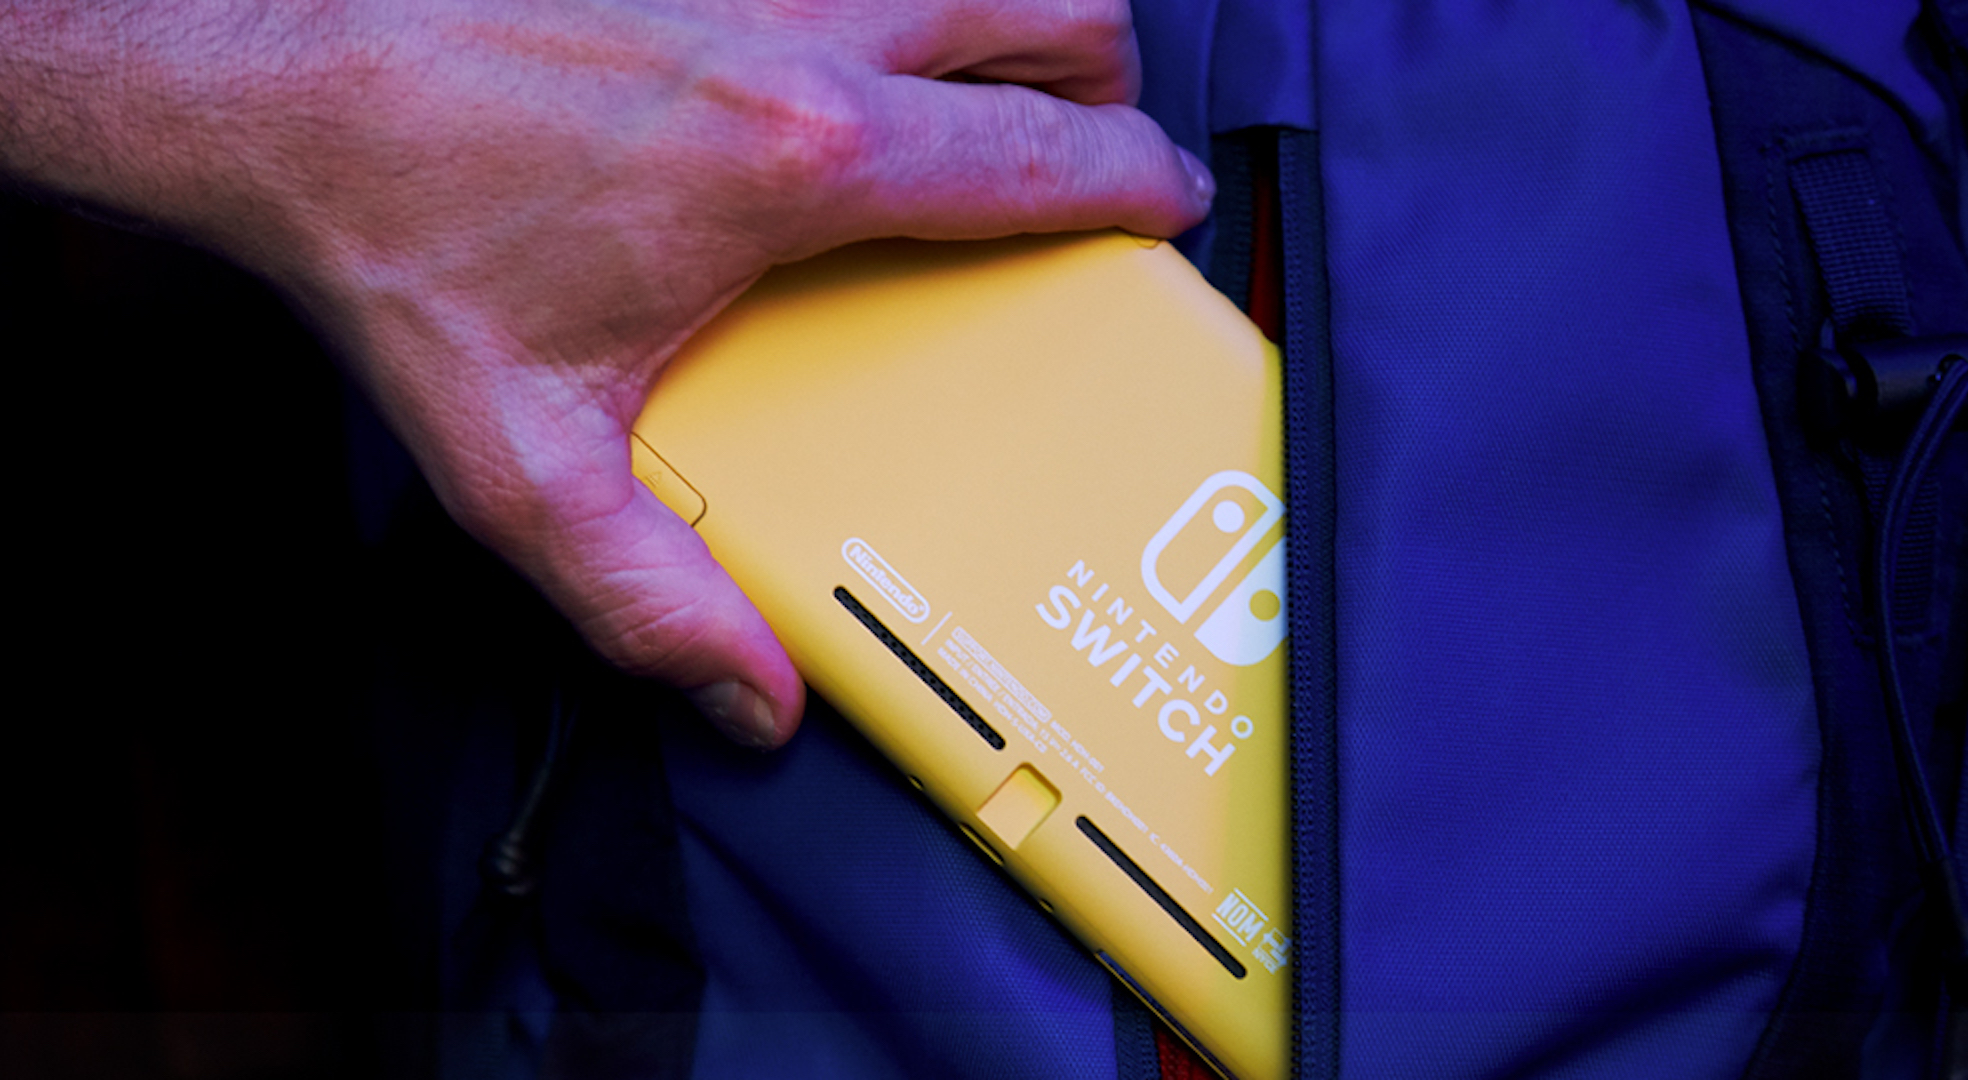 Nintendo diz que o Nintendo Switch Lite não substituirá o Nintendo 3DS -  NintendoBoy